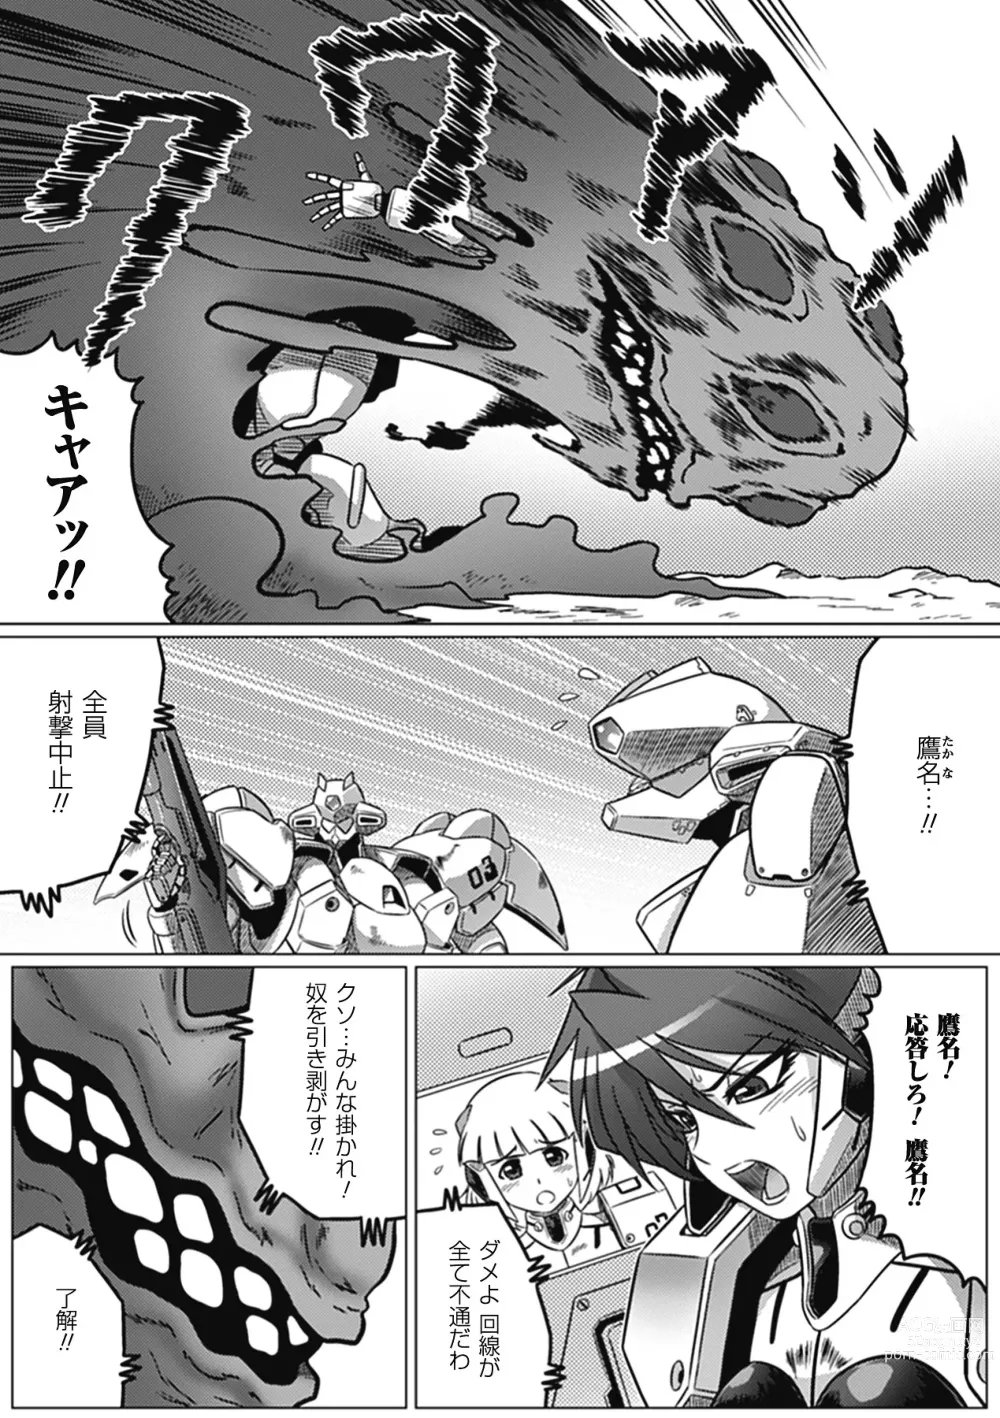 Page 17 of manga Ochita Tenshitachi no Zanei